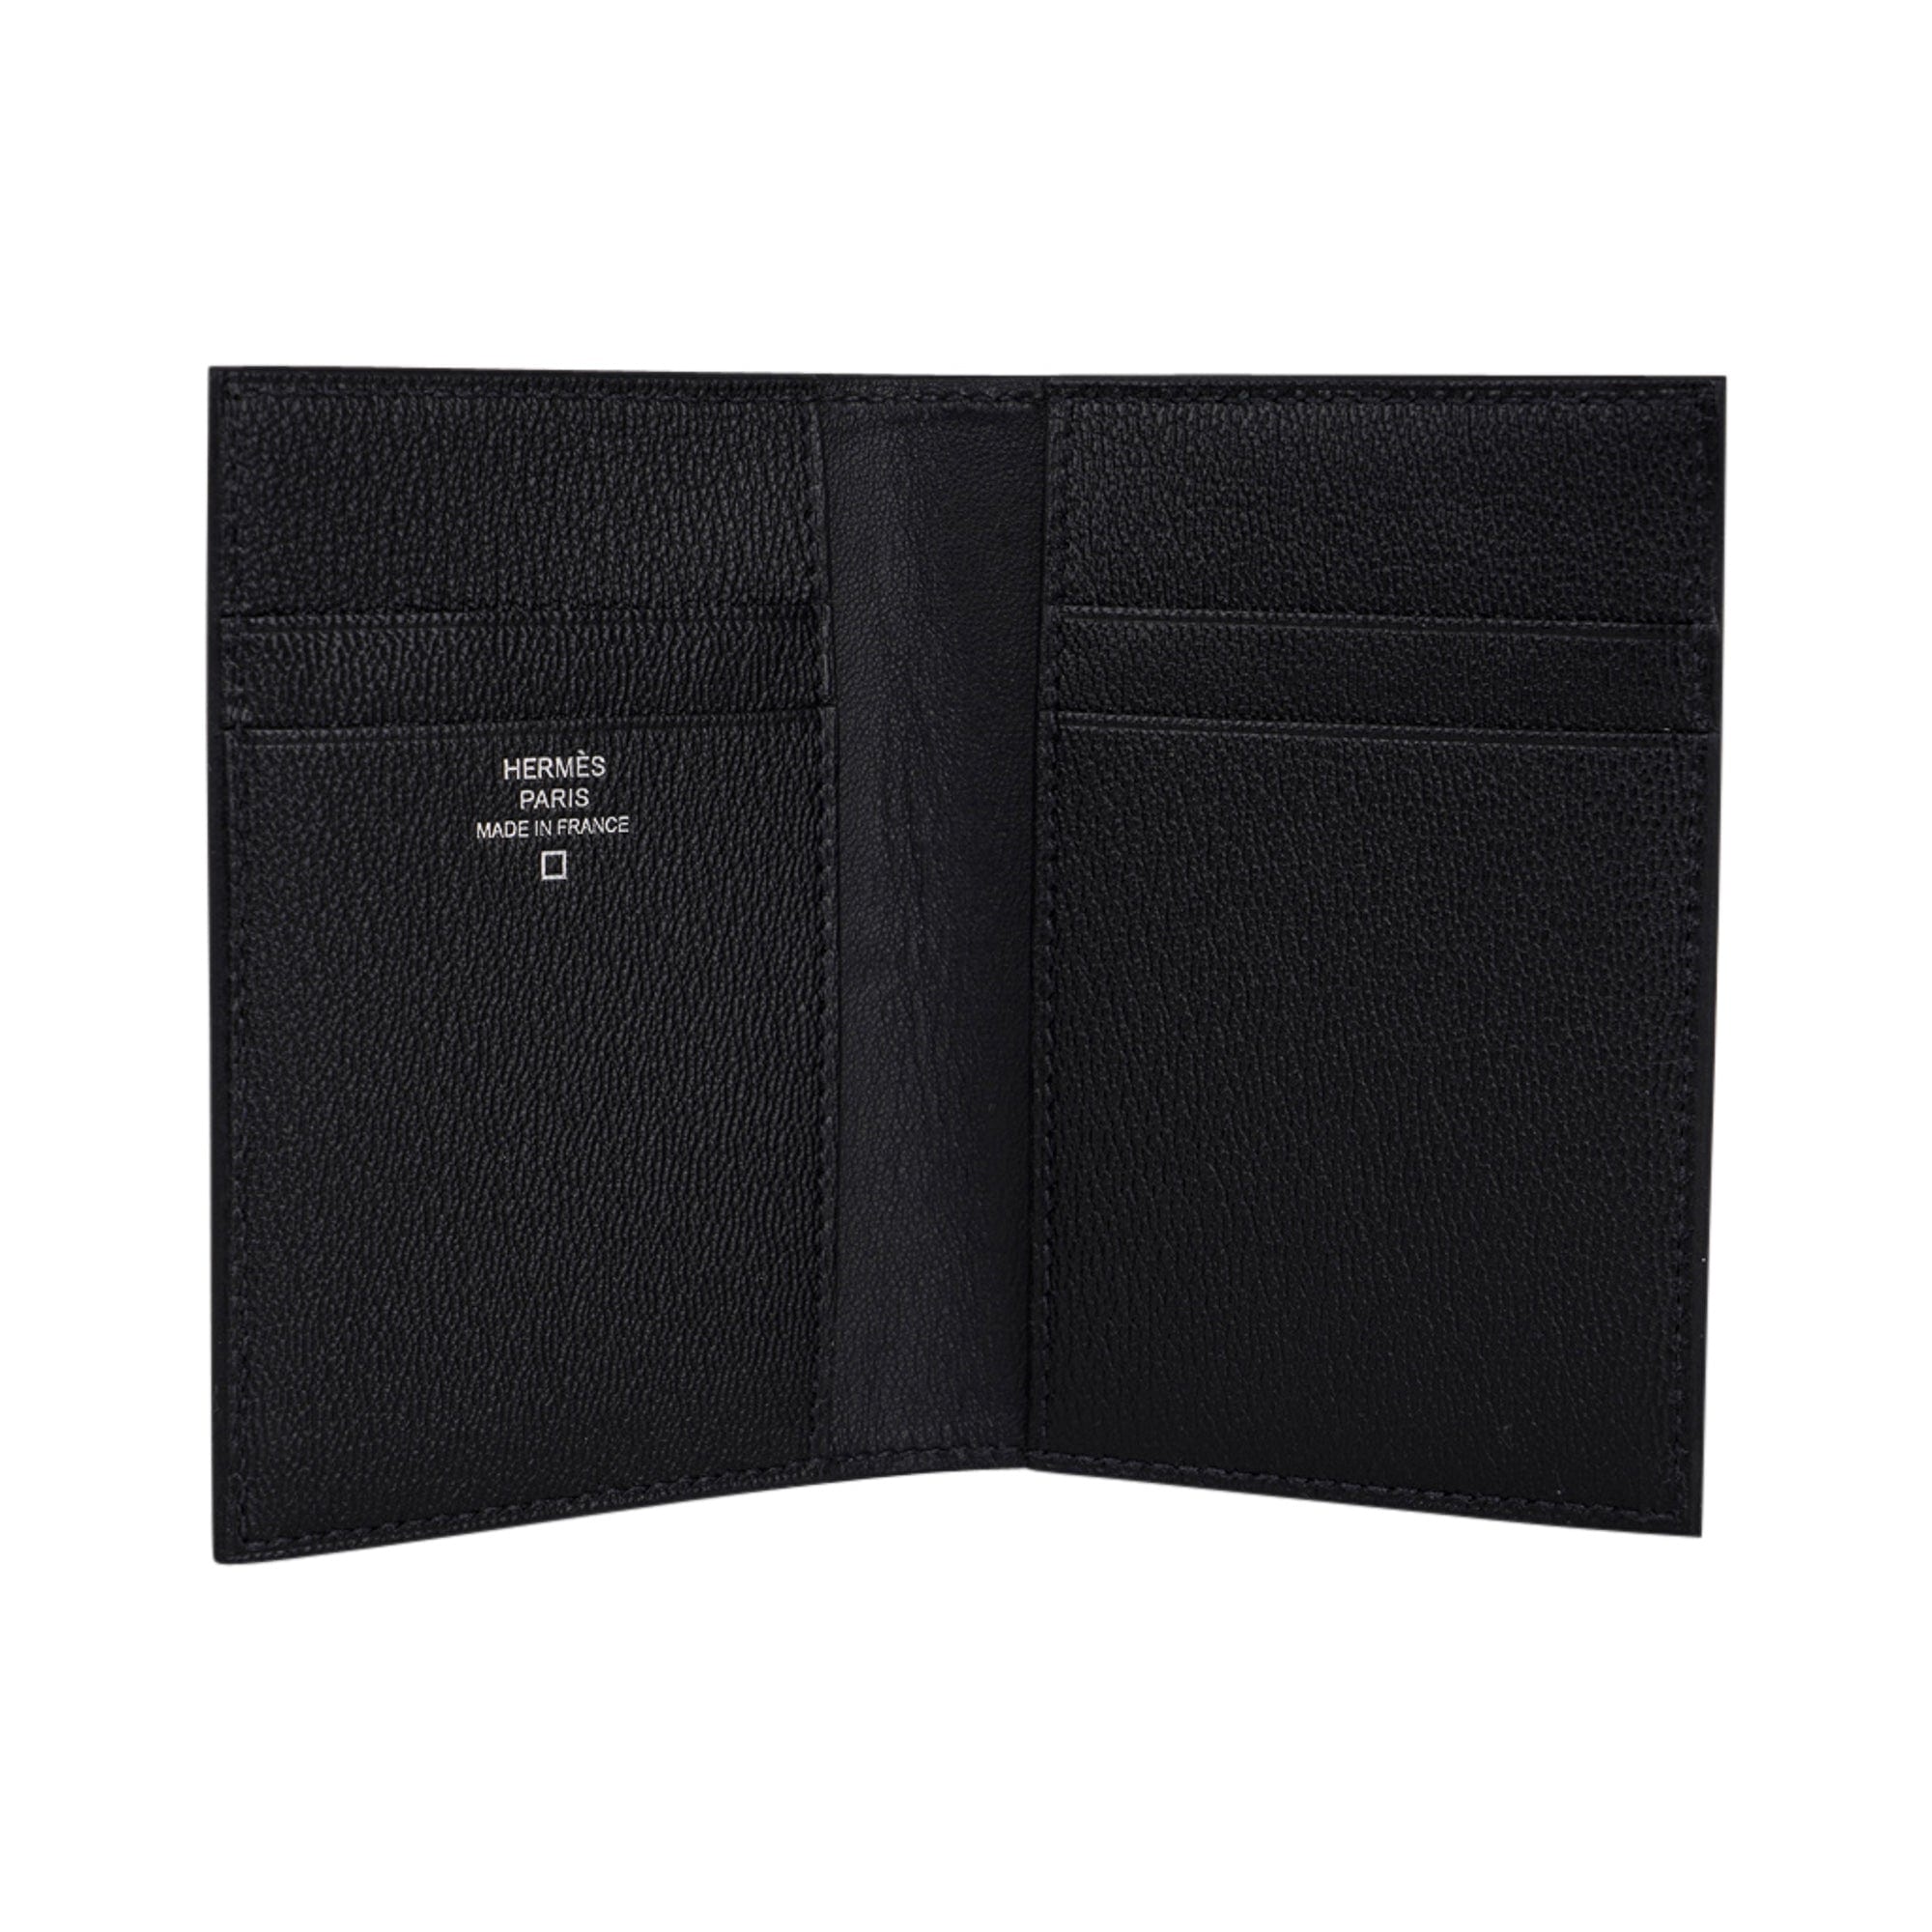 Hermès MC² Euclide Cardholder - Black Wallets, Accessories